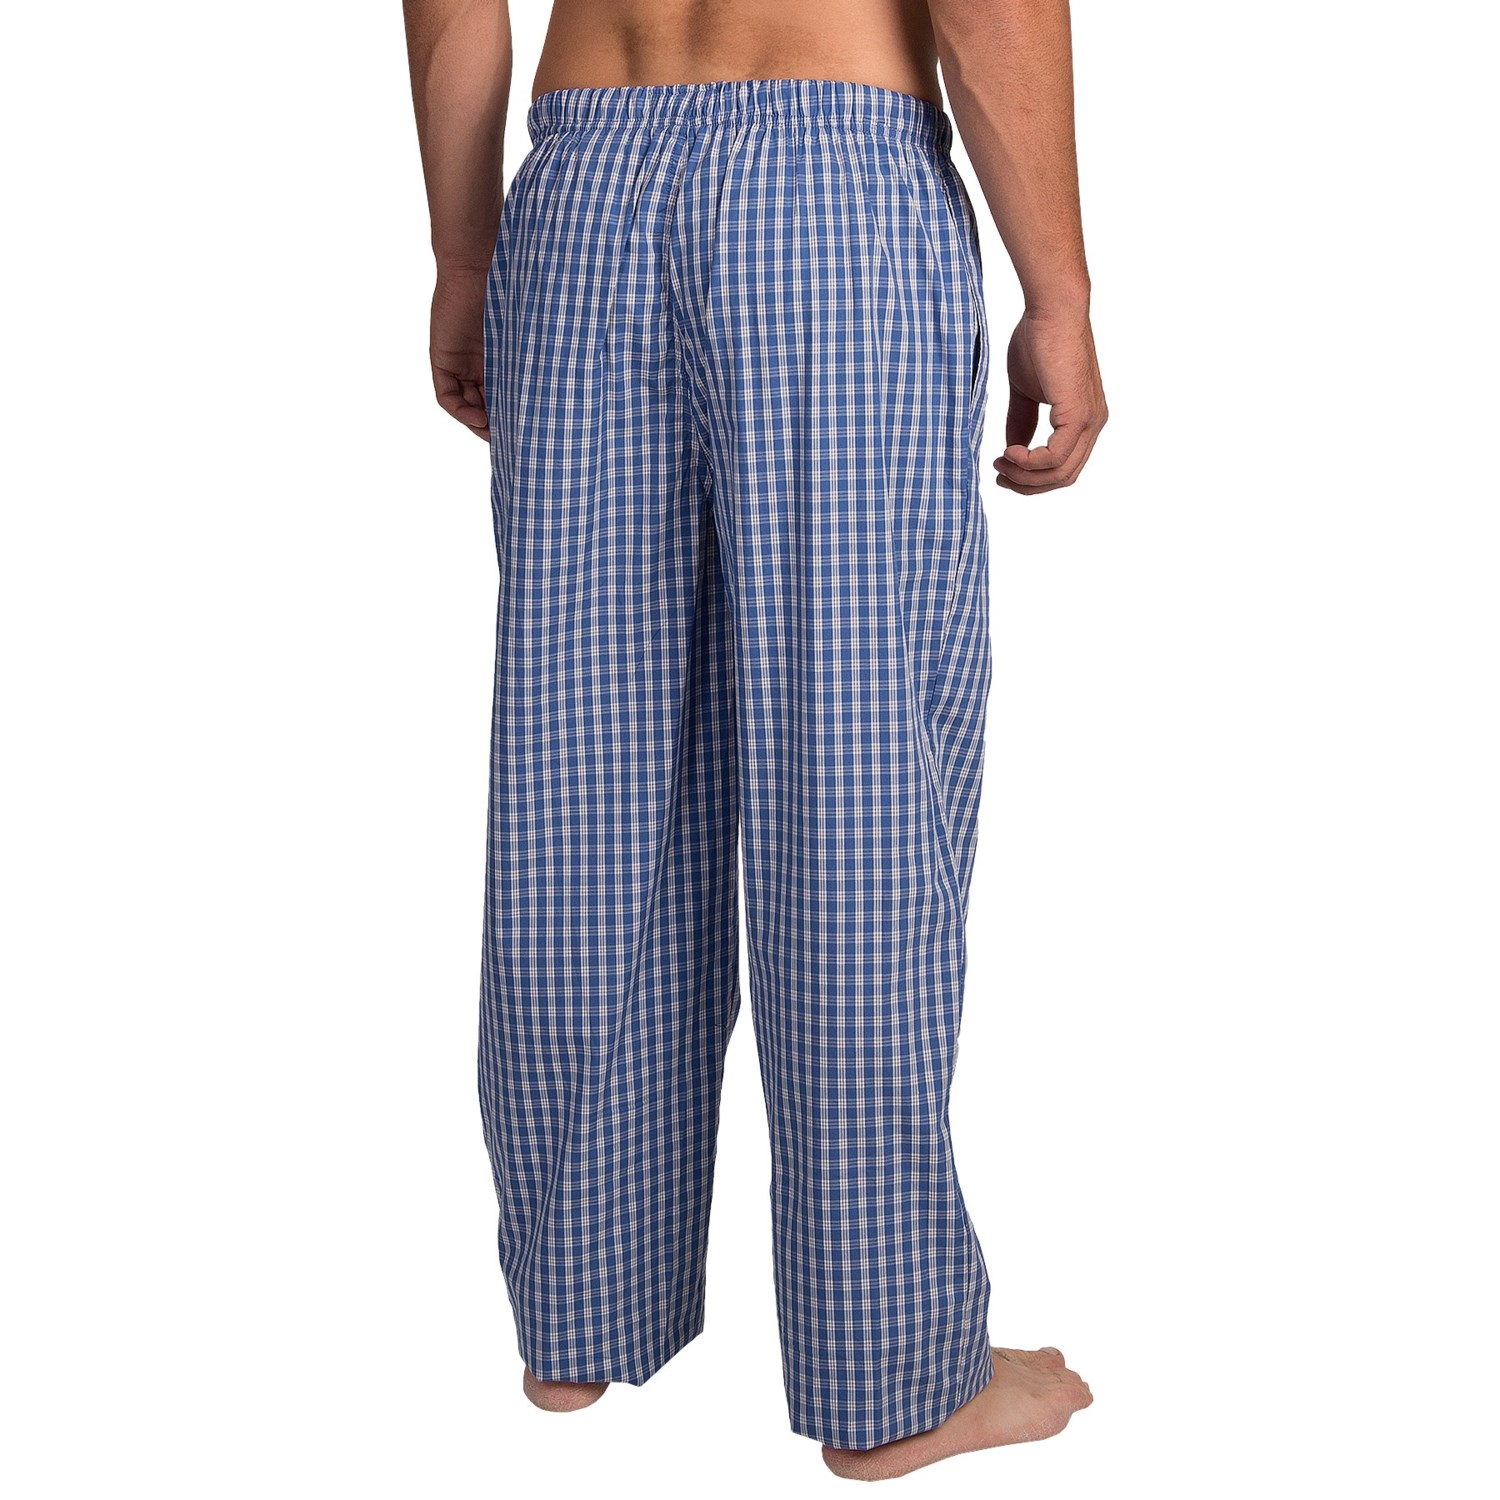 Michael Kors Sleep Pajama Pants (For Men) 9574C - Save 67%